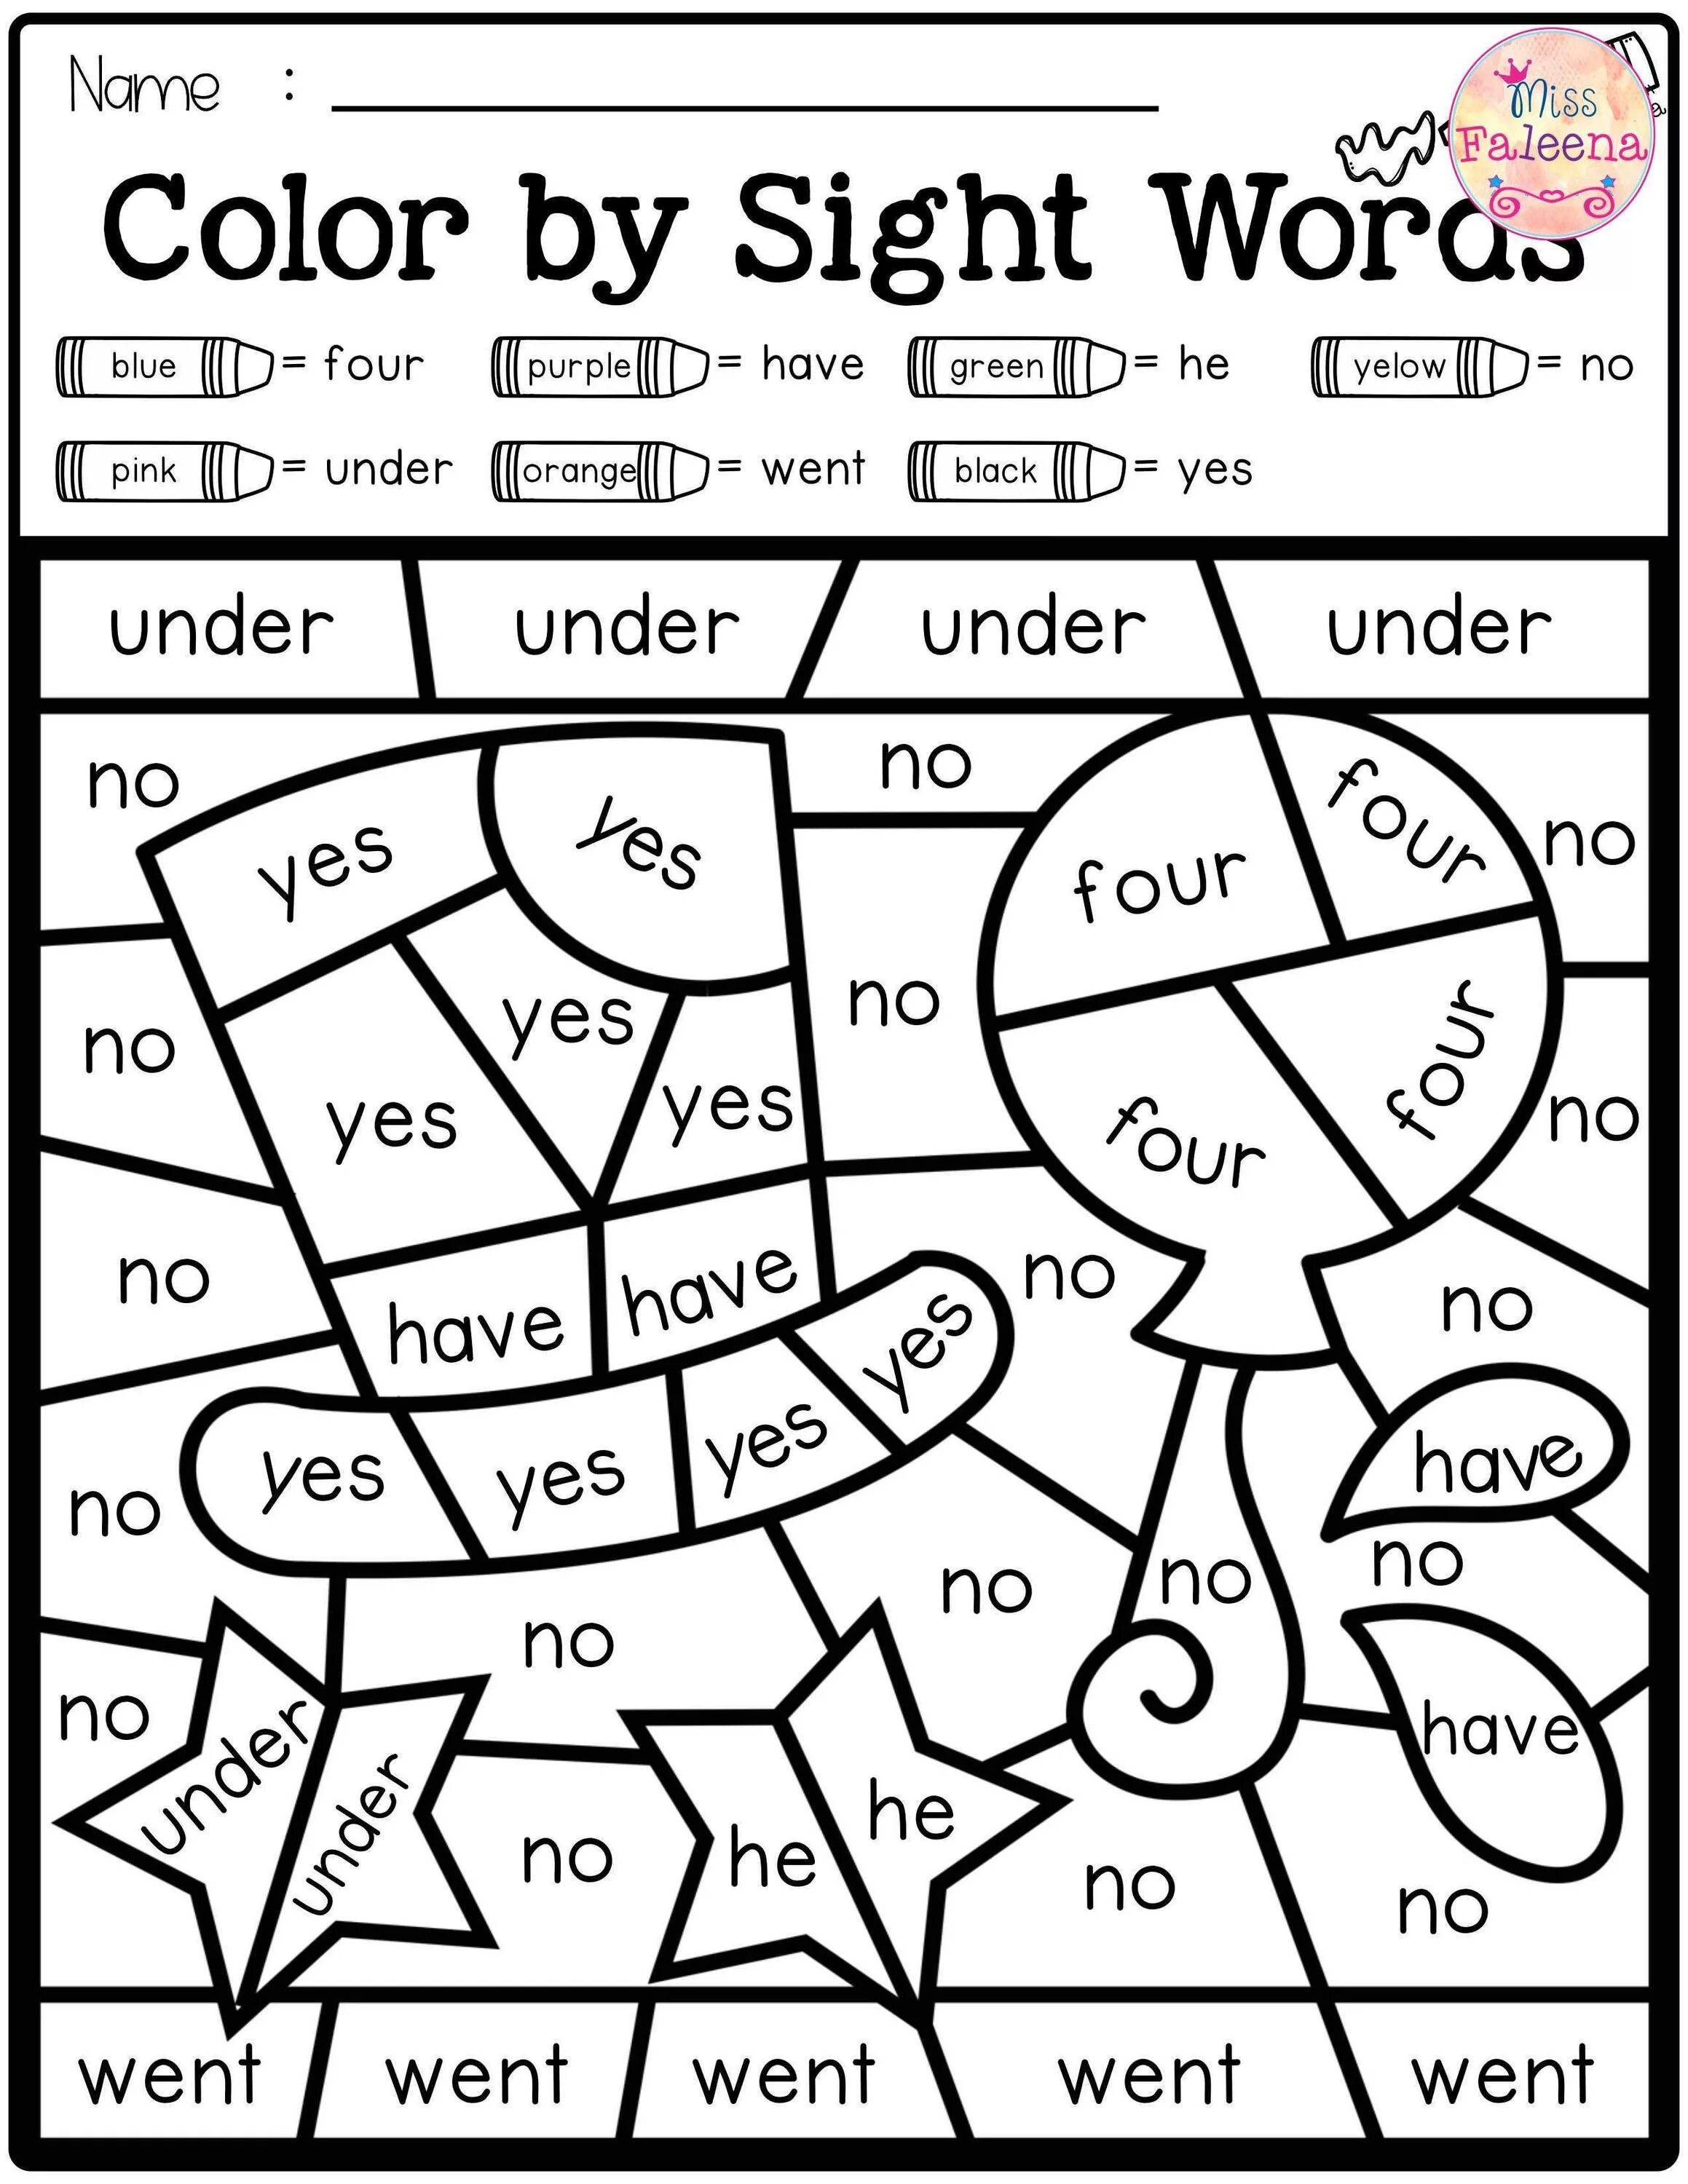 English has about words. Раскраска для изучения английского. Цвета на английском раскраска. Задания по английскому цвета. Цвета на английском для детей раскраска.